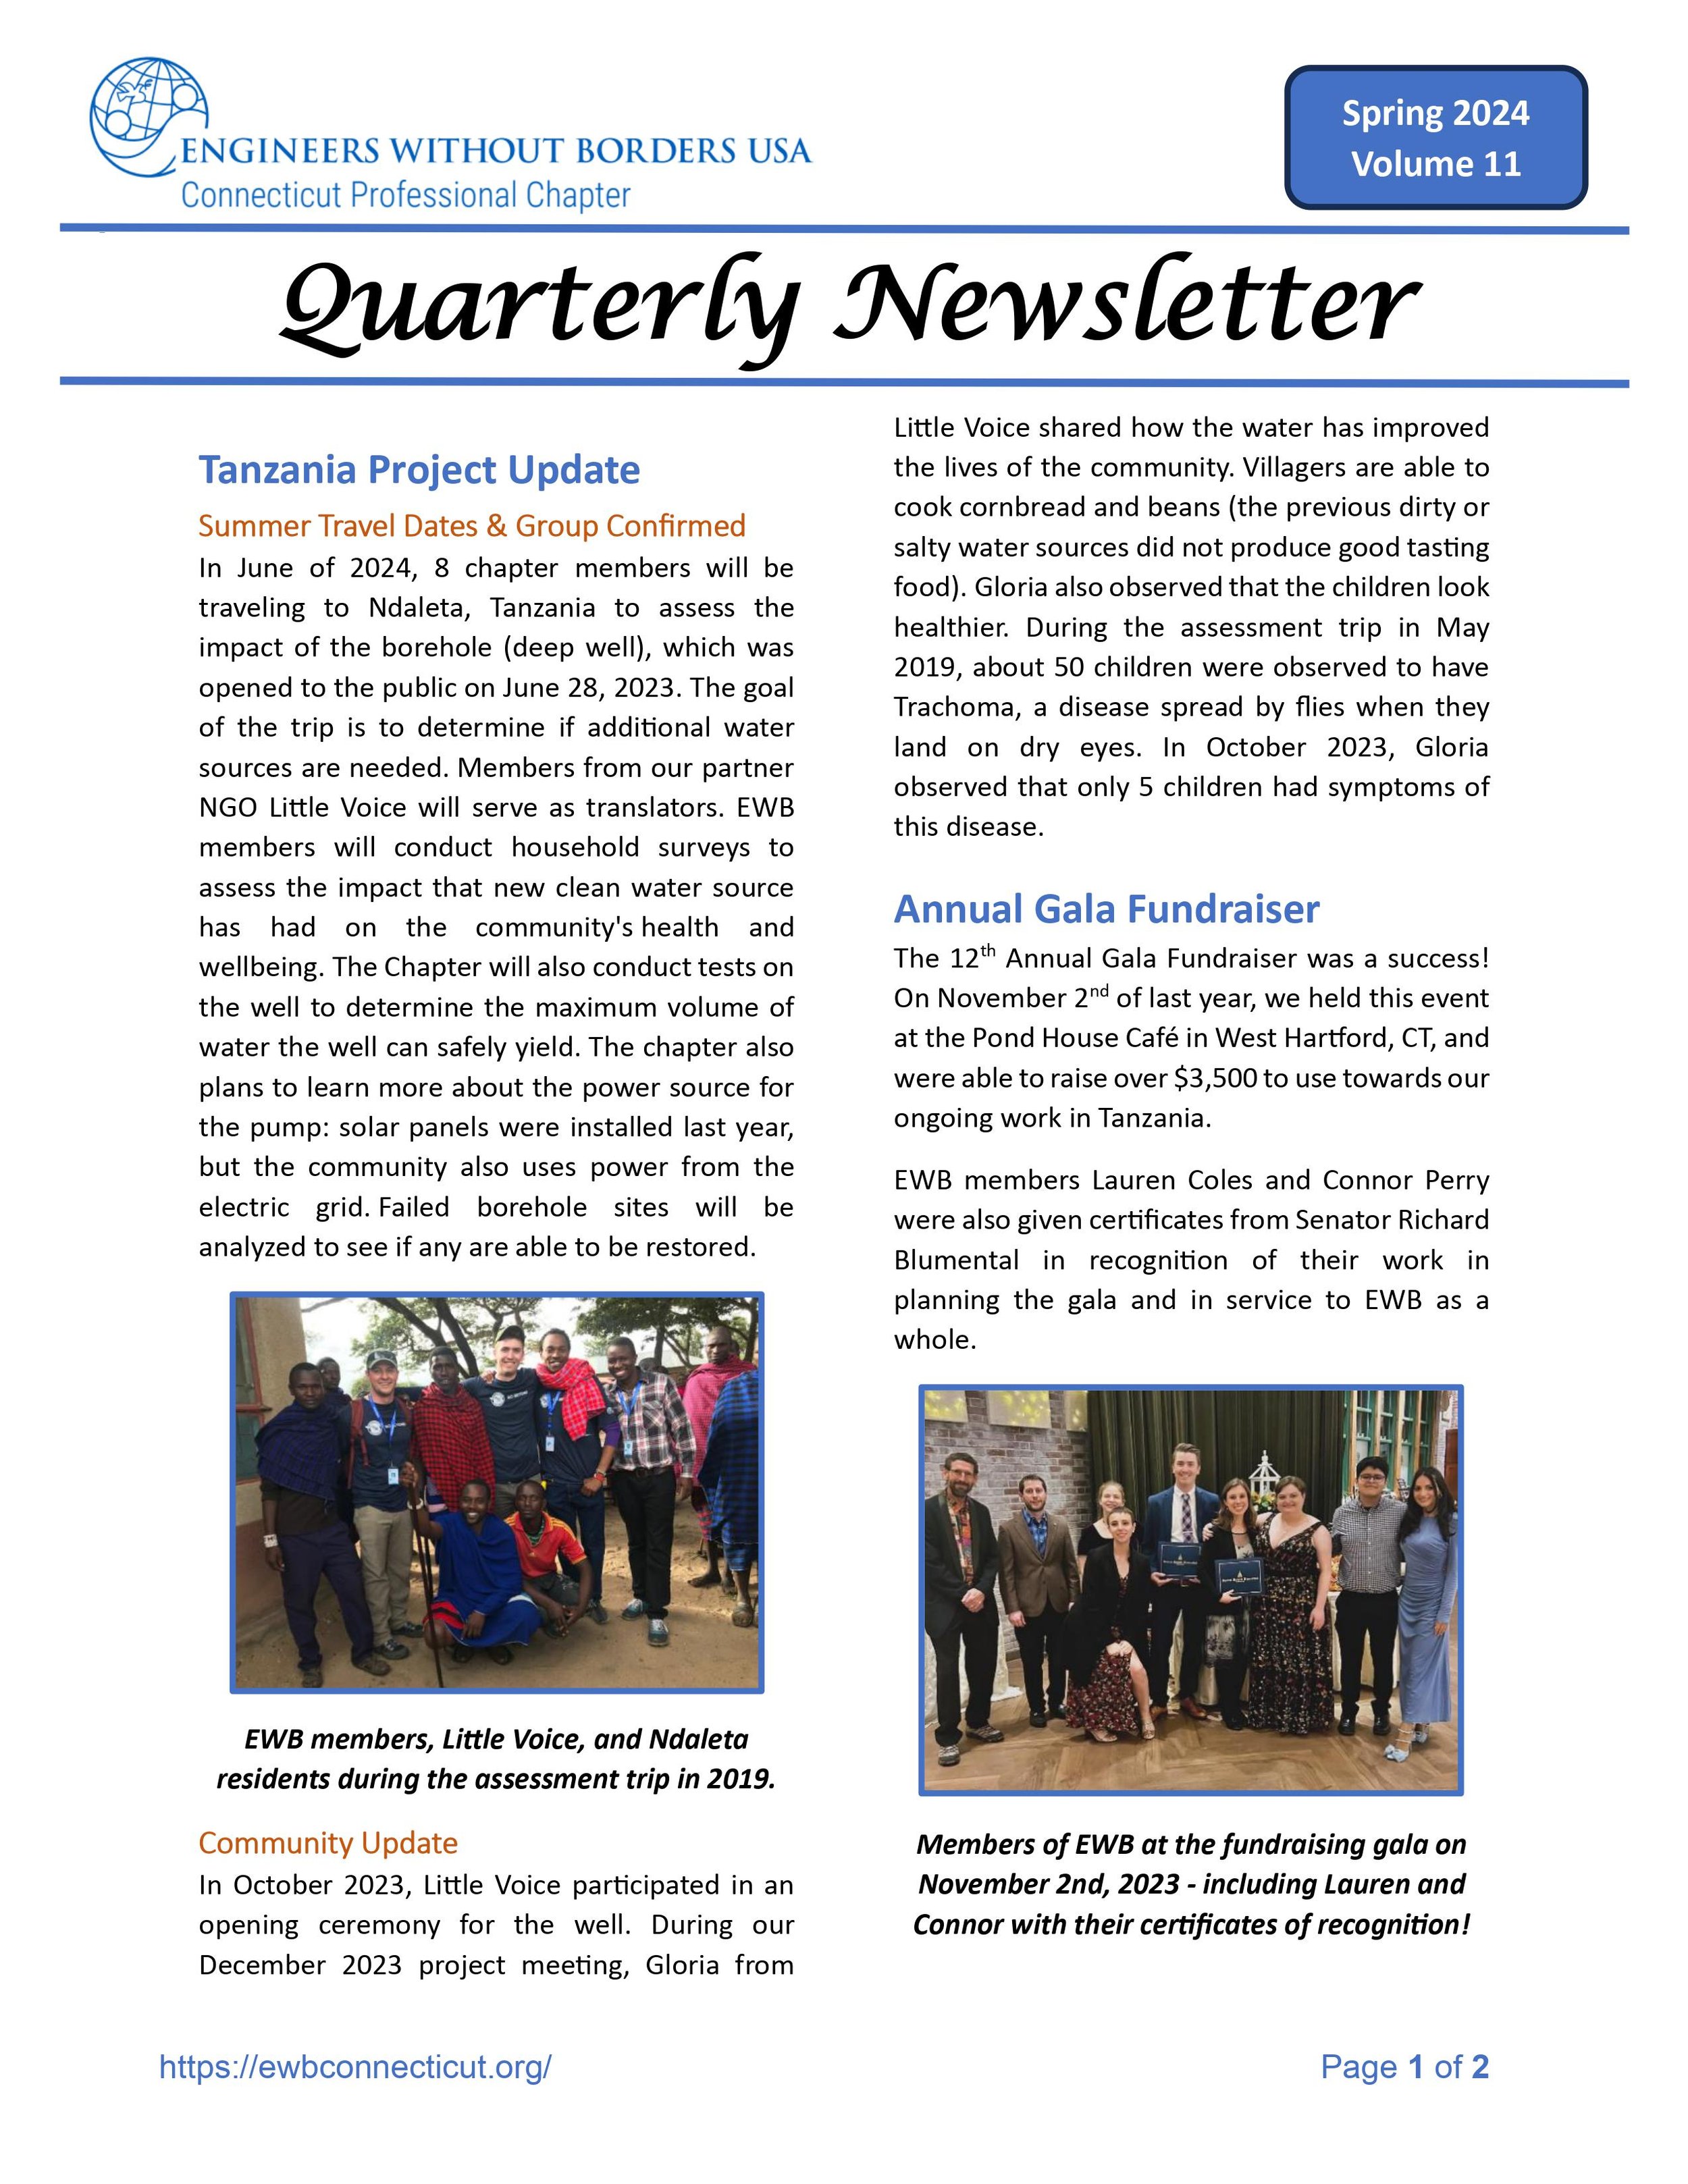 Quarterly Newsletter Spring 2024-images-1.jpg